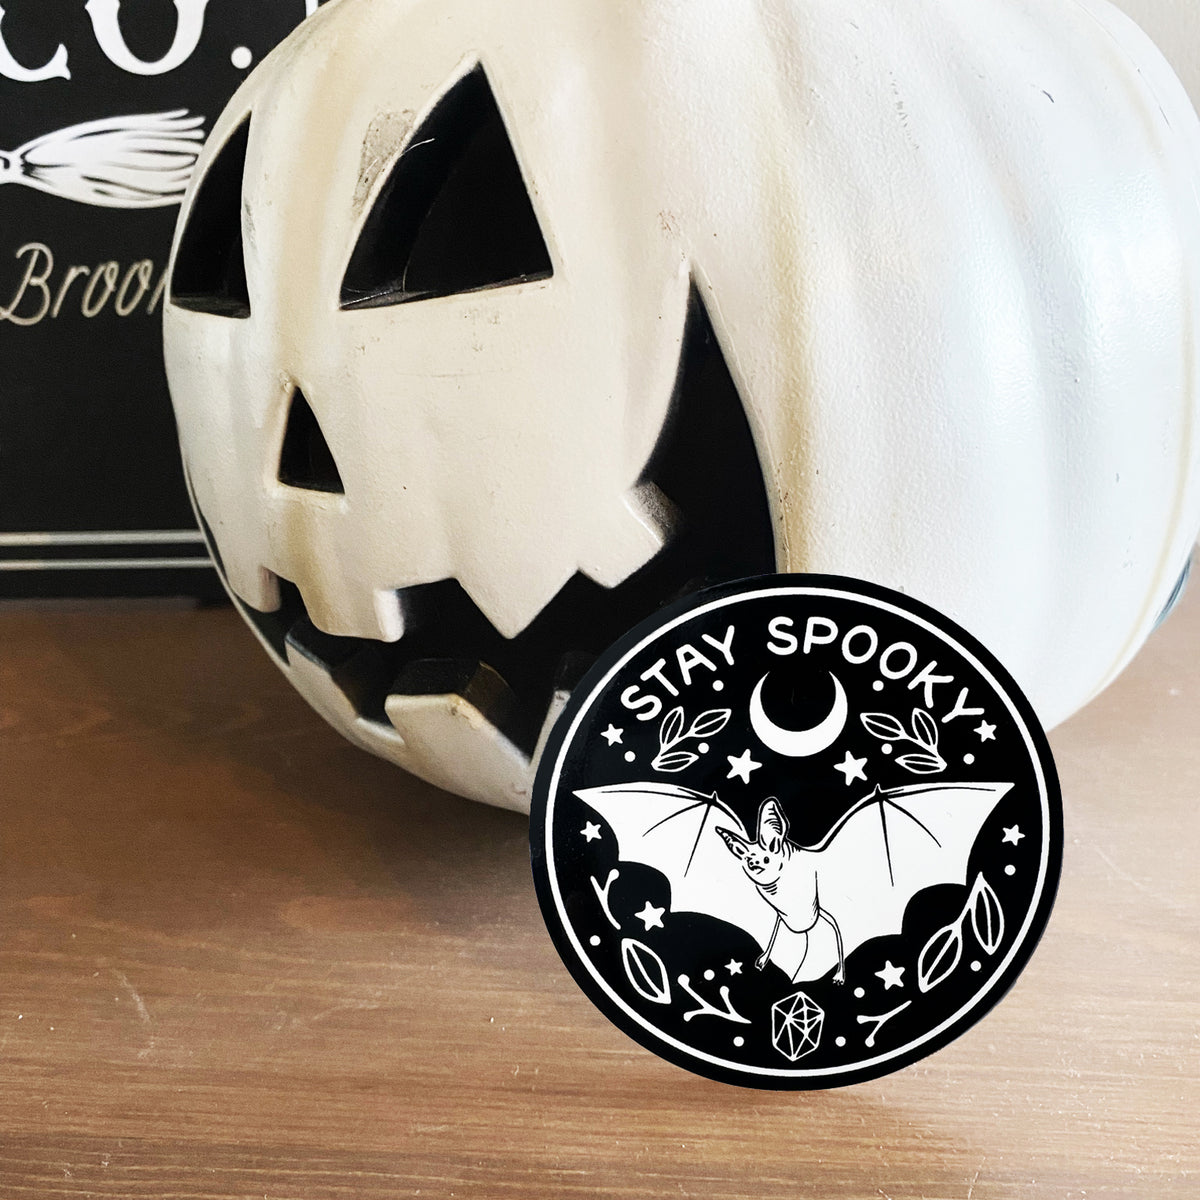 Stay Spooky Bat Decal Sticker